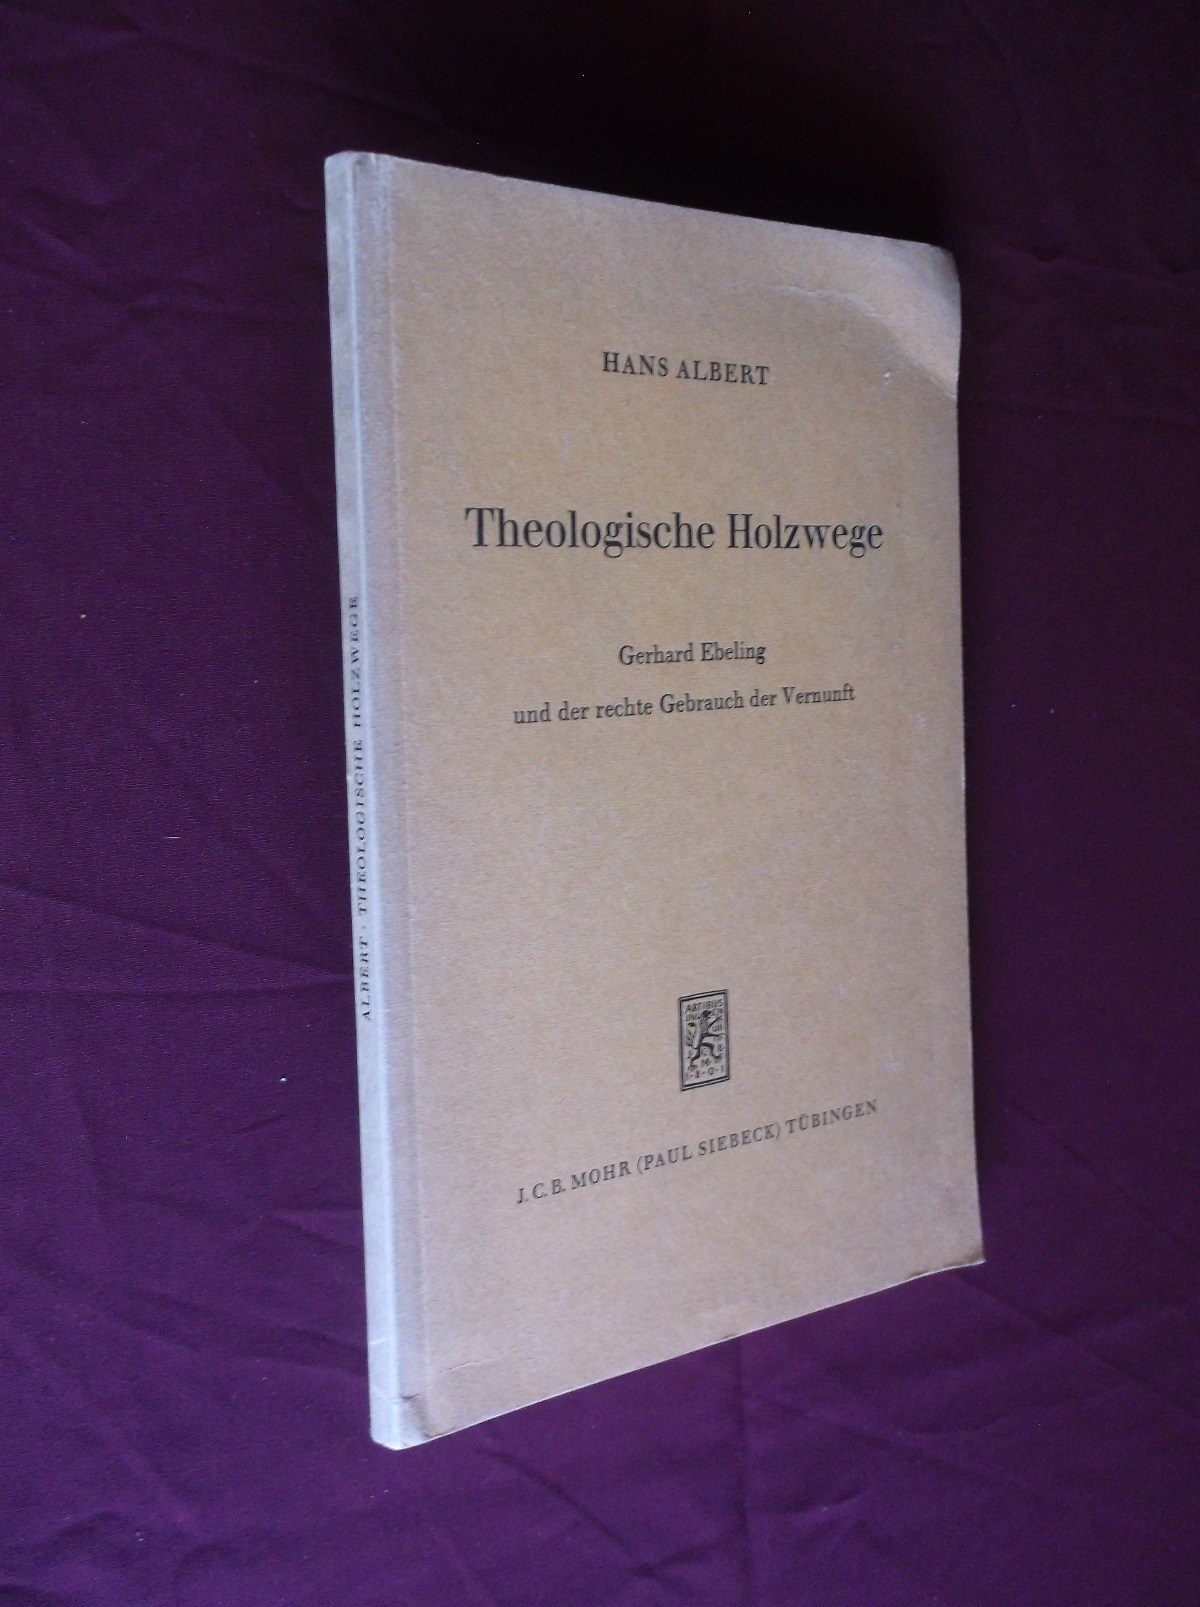 Theologische Holzwege: Gerhard Ebeling Und Der Rechte Gebrauch der Vernunft (German edition) - Albert, Hans